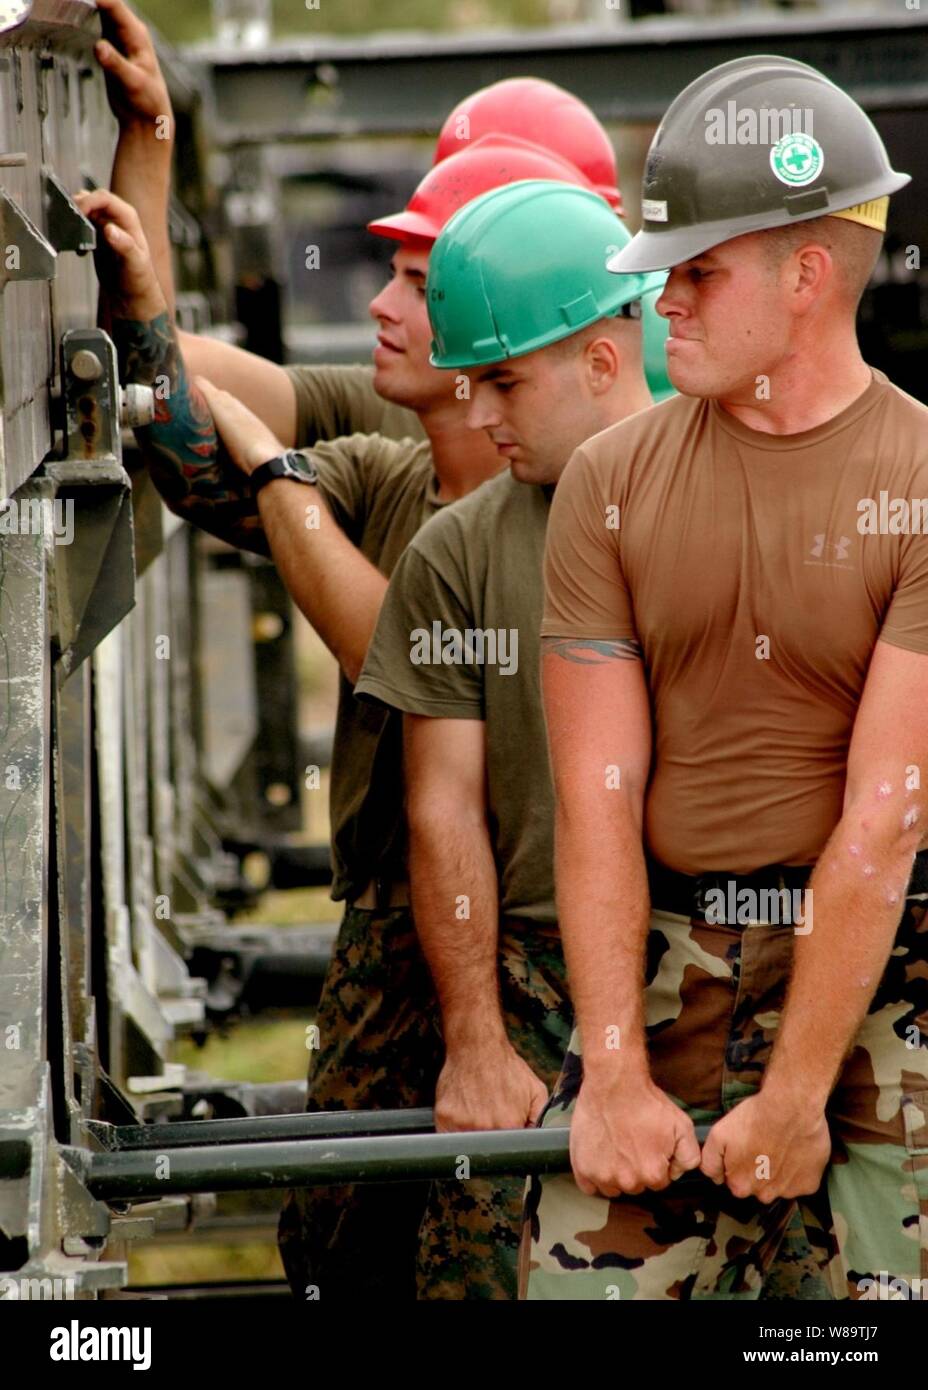 Marina Seabee Suboficiales Crubaugh marca de 3ª Clase (derecha) trabaja junto con los Marines del 9º Batallón de apoyo de ingenieros, 3er Grupo de Logística Marítima, III Fuerza Expedicionaria de la Marina, para armar una viga de medio puente durante un ejercicio de entrenamiento en el campamento de Hansen, Japón, el 14 de noviembre, 2006. Evoluciones de formación militar conjunta ayuda a promover las relaciones entre los Marines y Seabees en entornos de contingencia. Crubaugh se adjunta al batallón móvil de Construcción Naval 1. Foto de stock